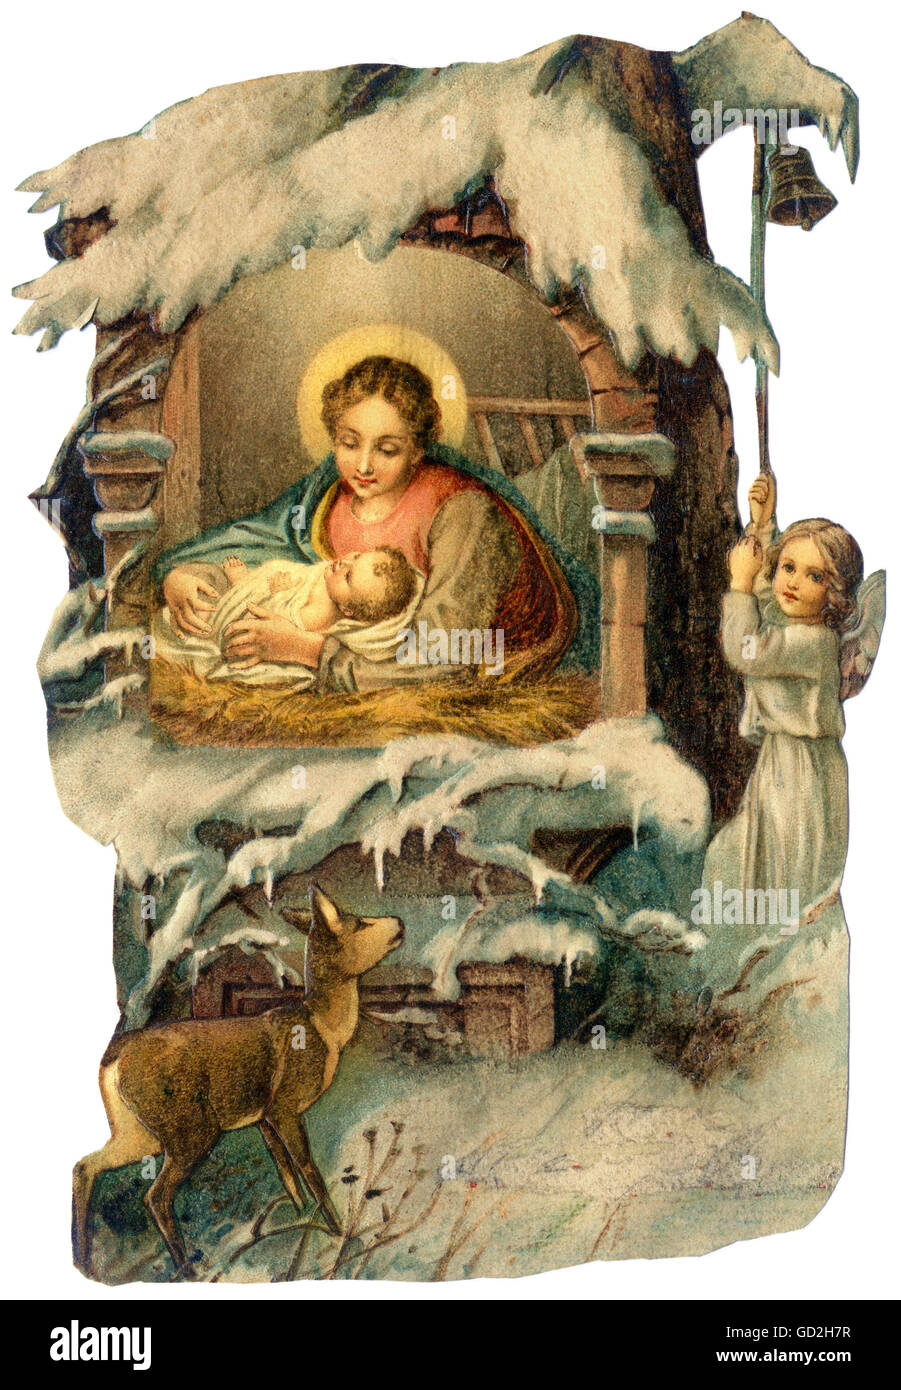 Religión, Cristianismo, Santa María, el niño Jesús, escena de la Natividad, en la nieve, litografía, Alemania, 1901, Derechos adicionales-Clearencias-no disponible Foto de stock